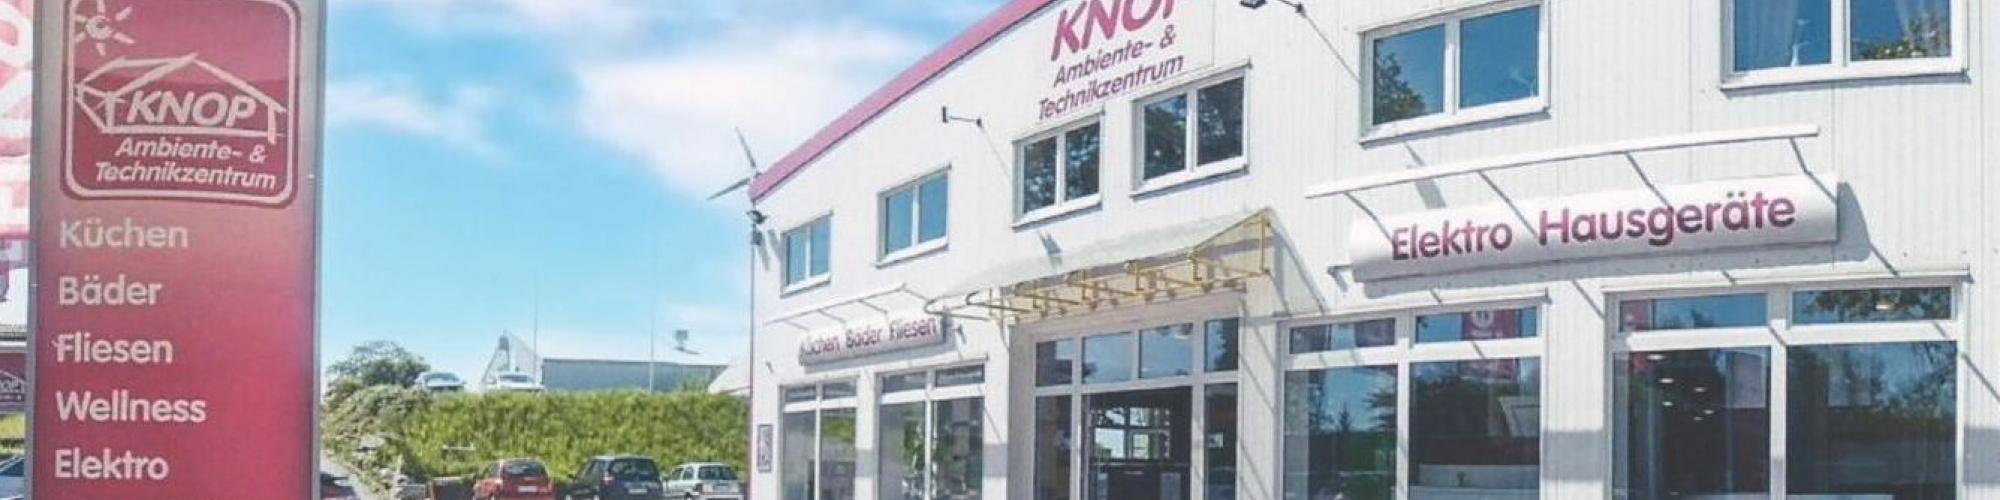 Knop Neustadt GmbH